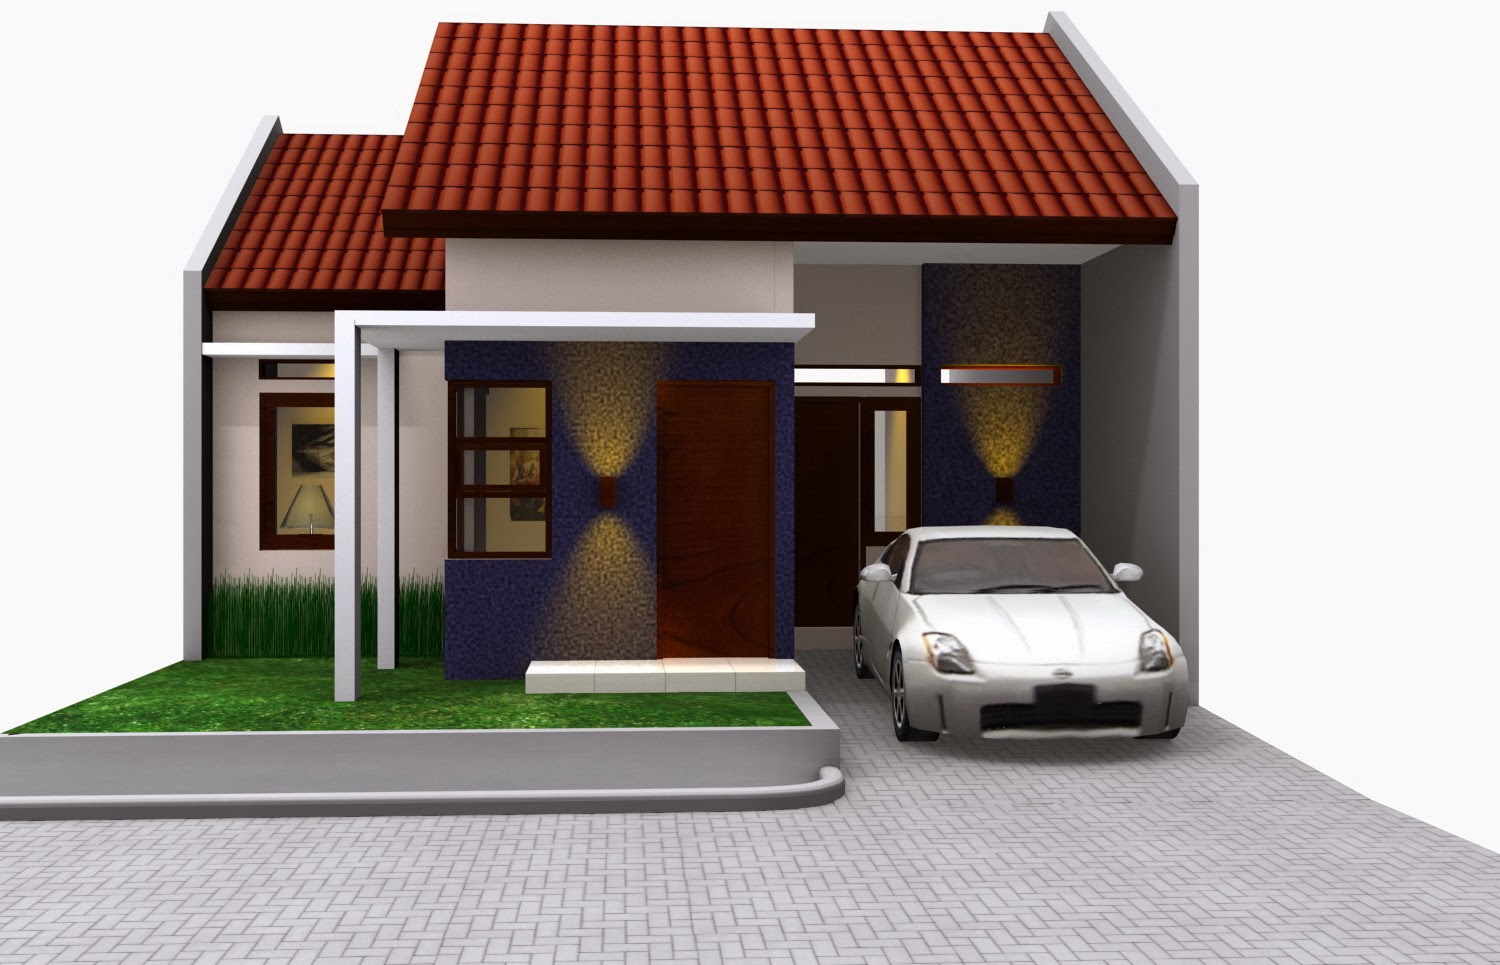 67 Desain Rumah Minimalis Ukuran 4x12 Desain Rumah Minimalis Terbaru